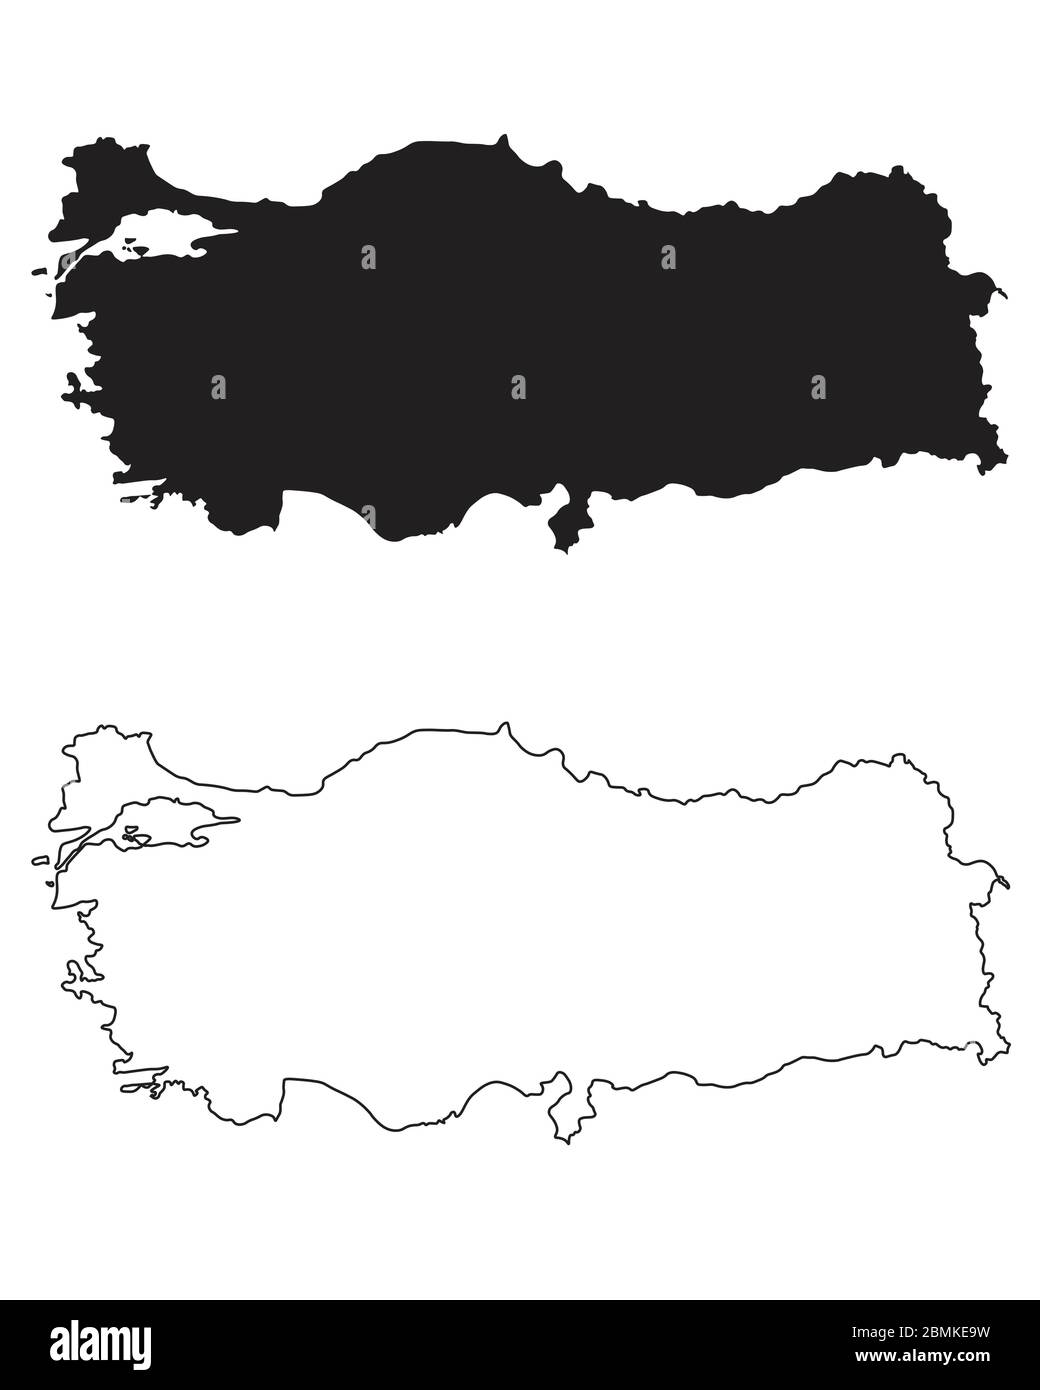 Mappa dei Paesi della Turchia. Silhouette e profilo neri isolati su sfondo bianco. Vettore EPS Illustrazione Vettoriale